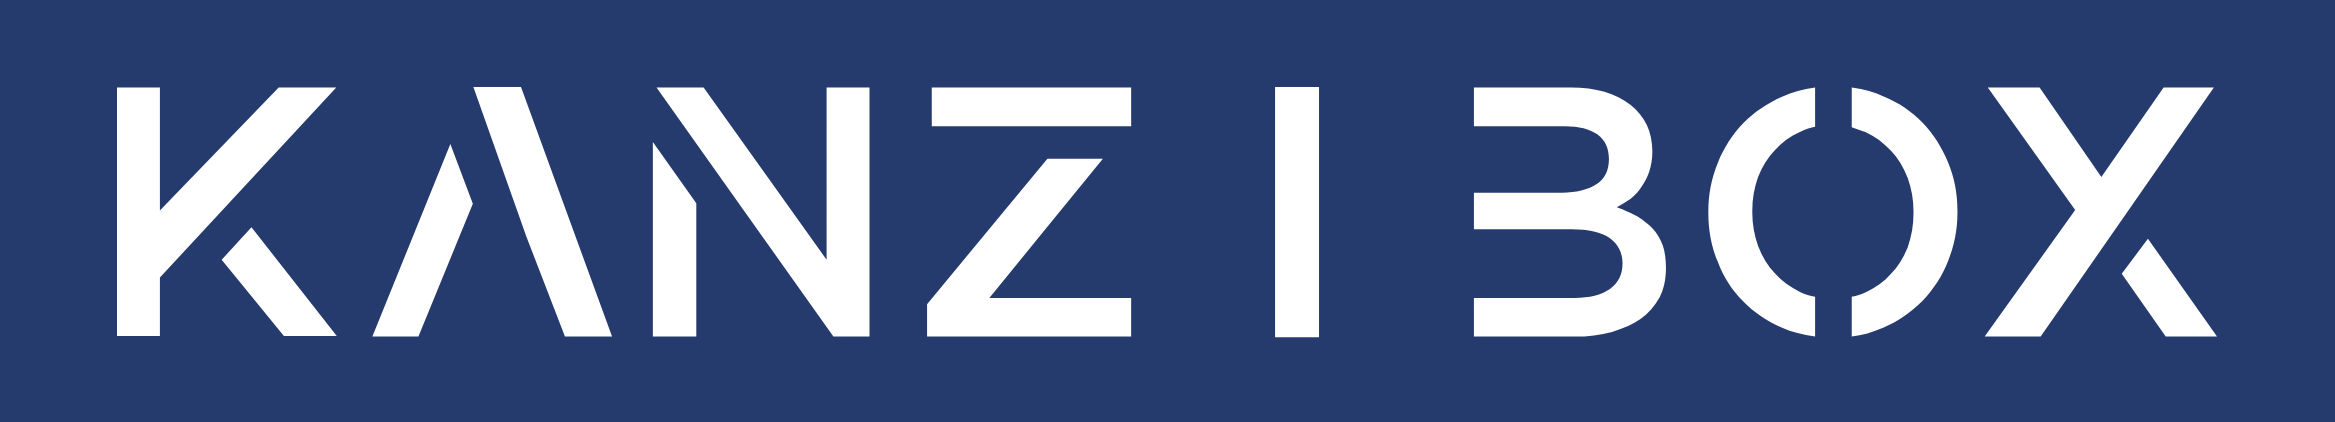 kanzibox